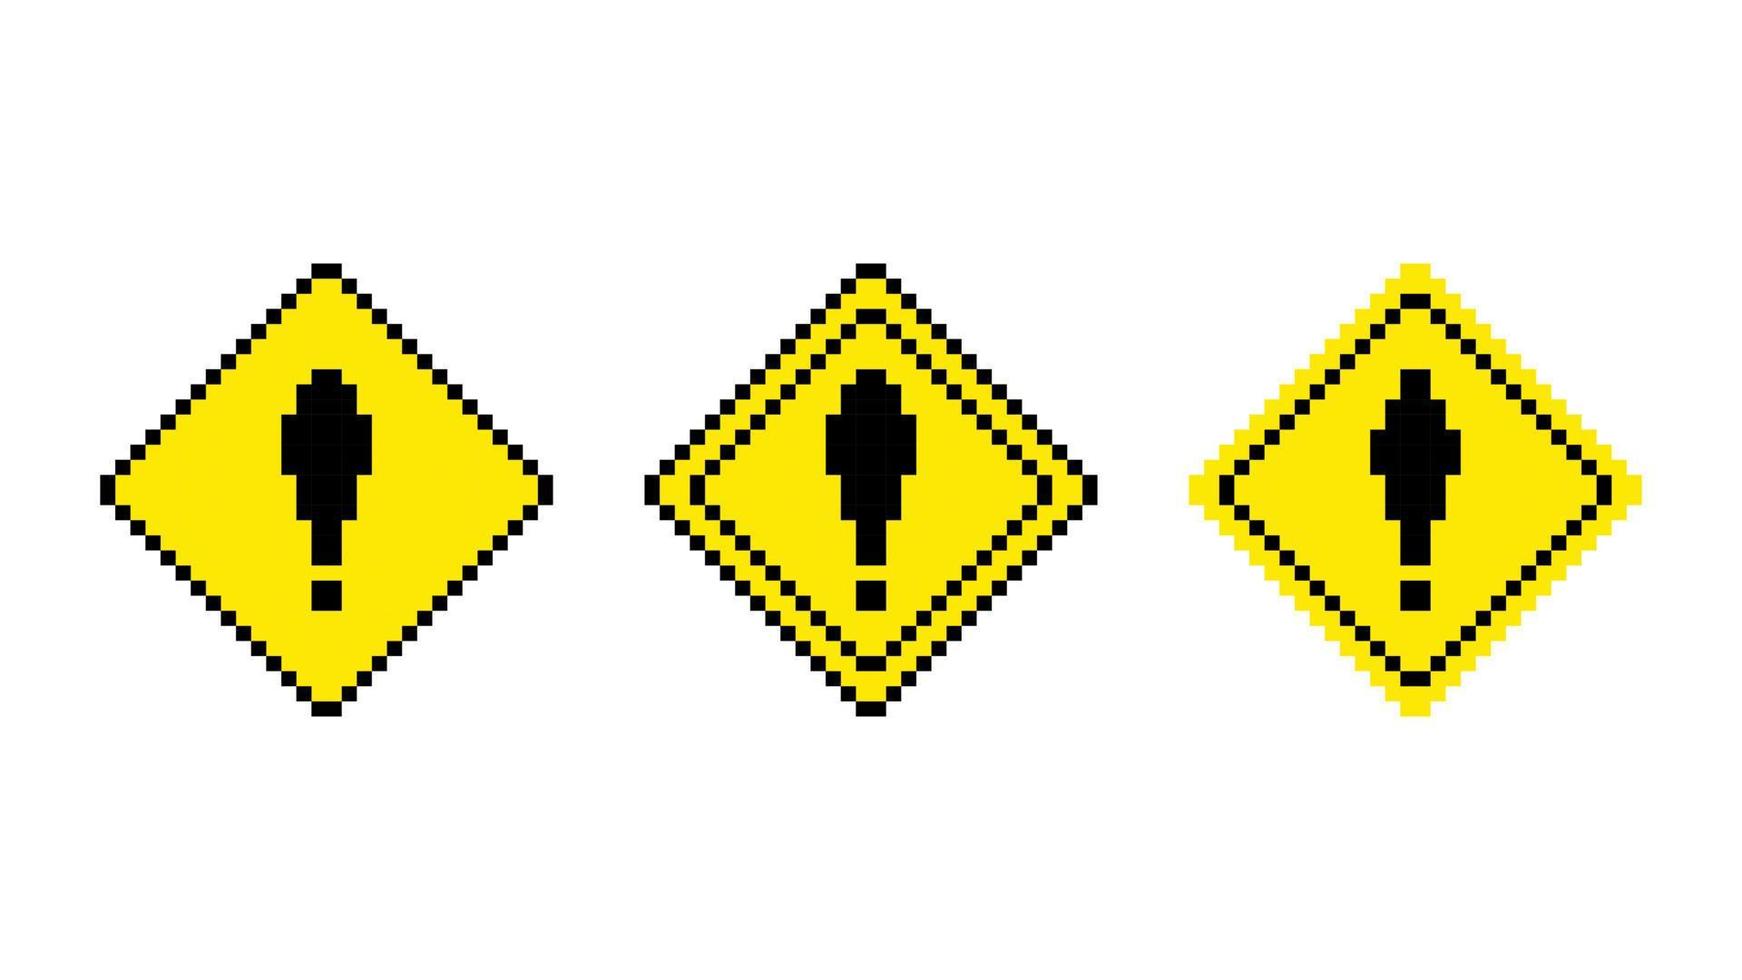 señal de tráfico de advertencia de píxeles. rombo amarillo con signo de exclamación negro de atención y precaución. información de peligro en el diseño de vectores de juegos de 8 bits.